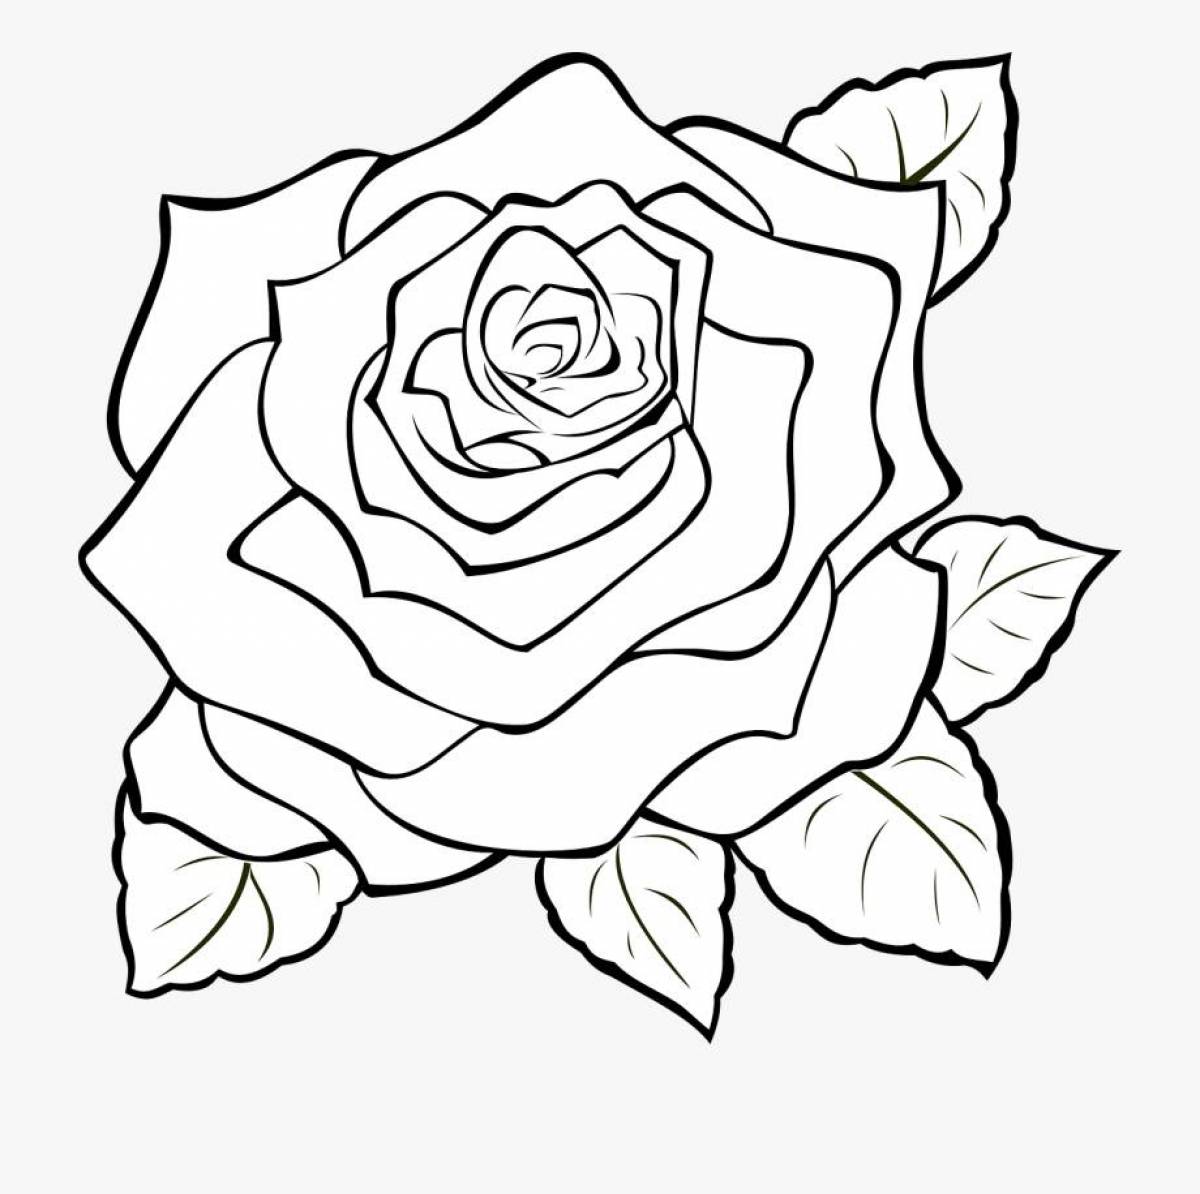 Ornate rose coloring book